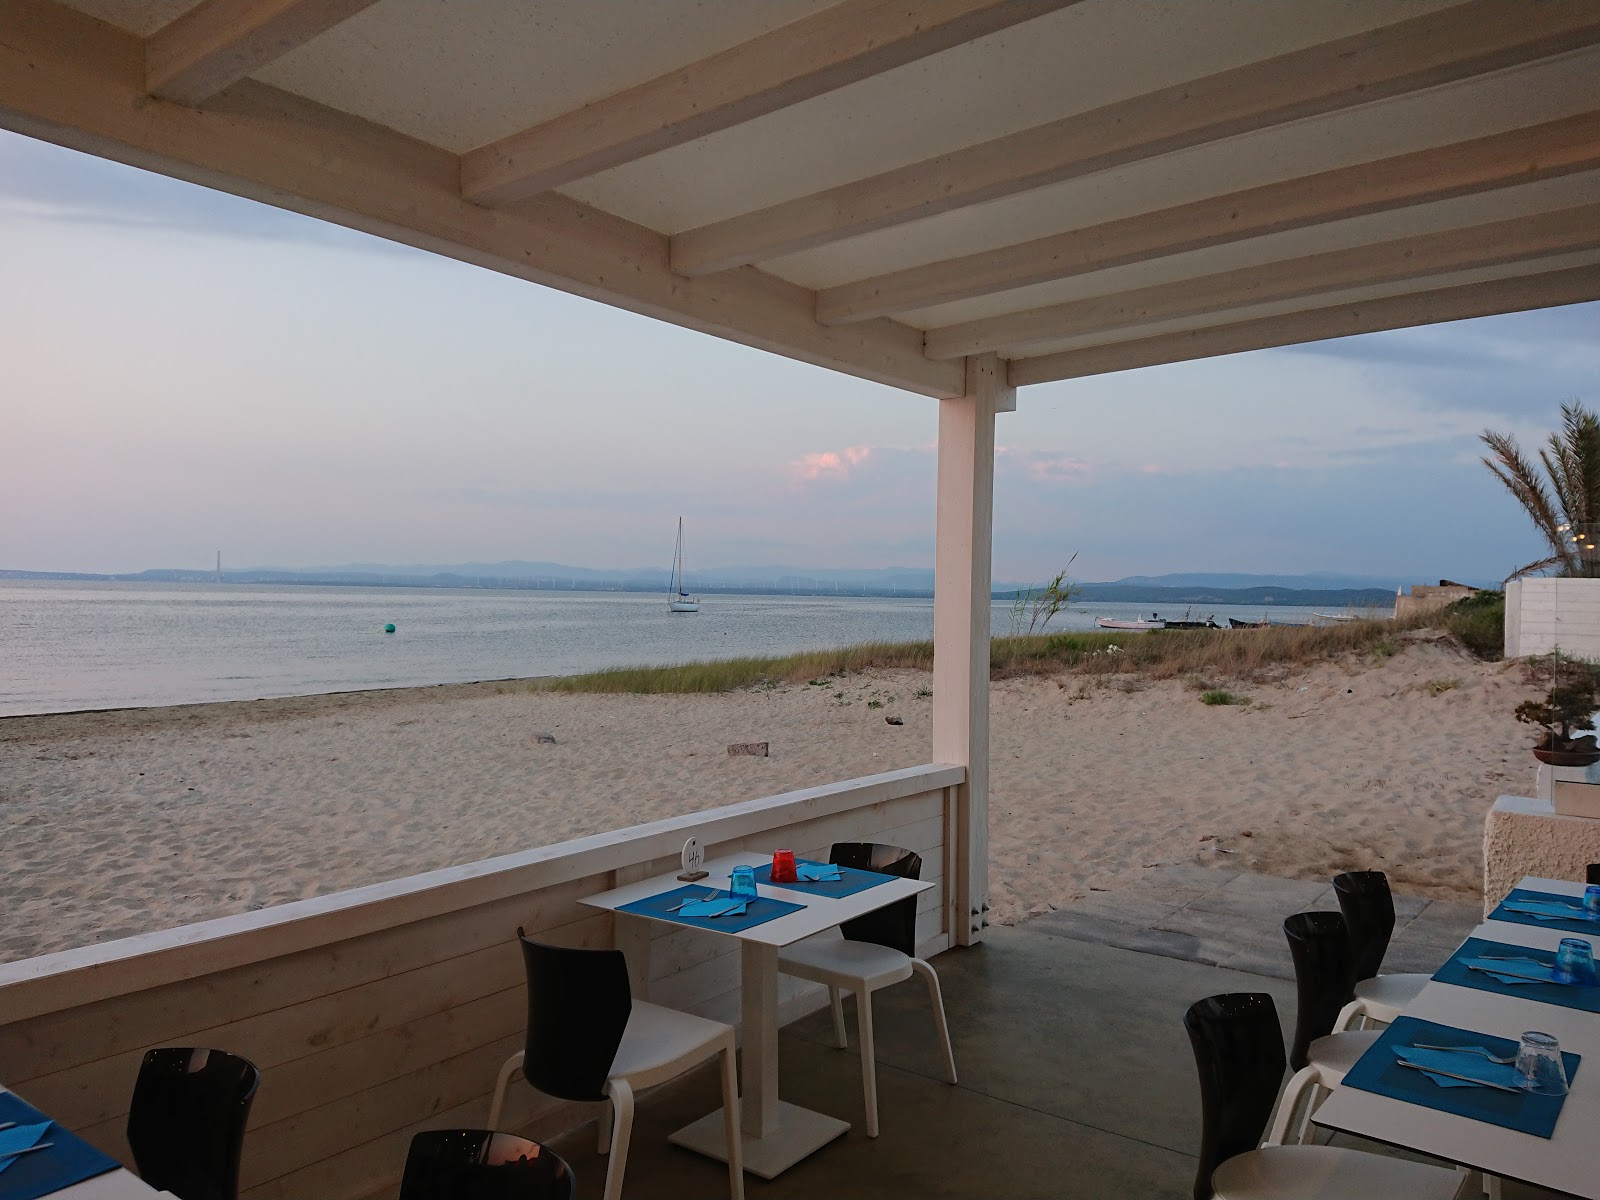 Foto de Cussorgia beach - lugar popular entre los conocedores del relax